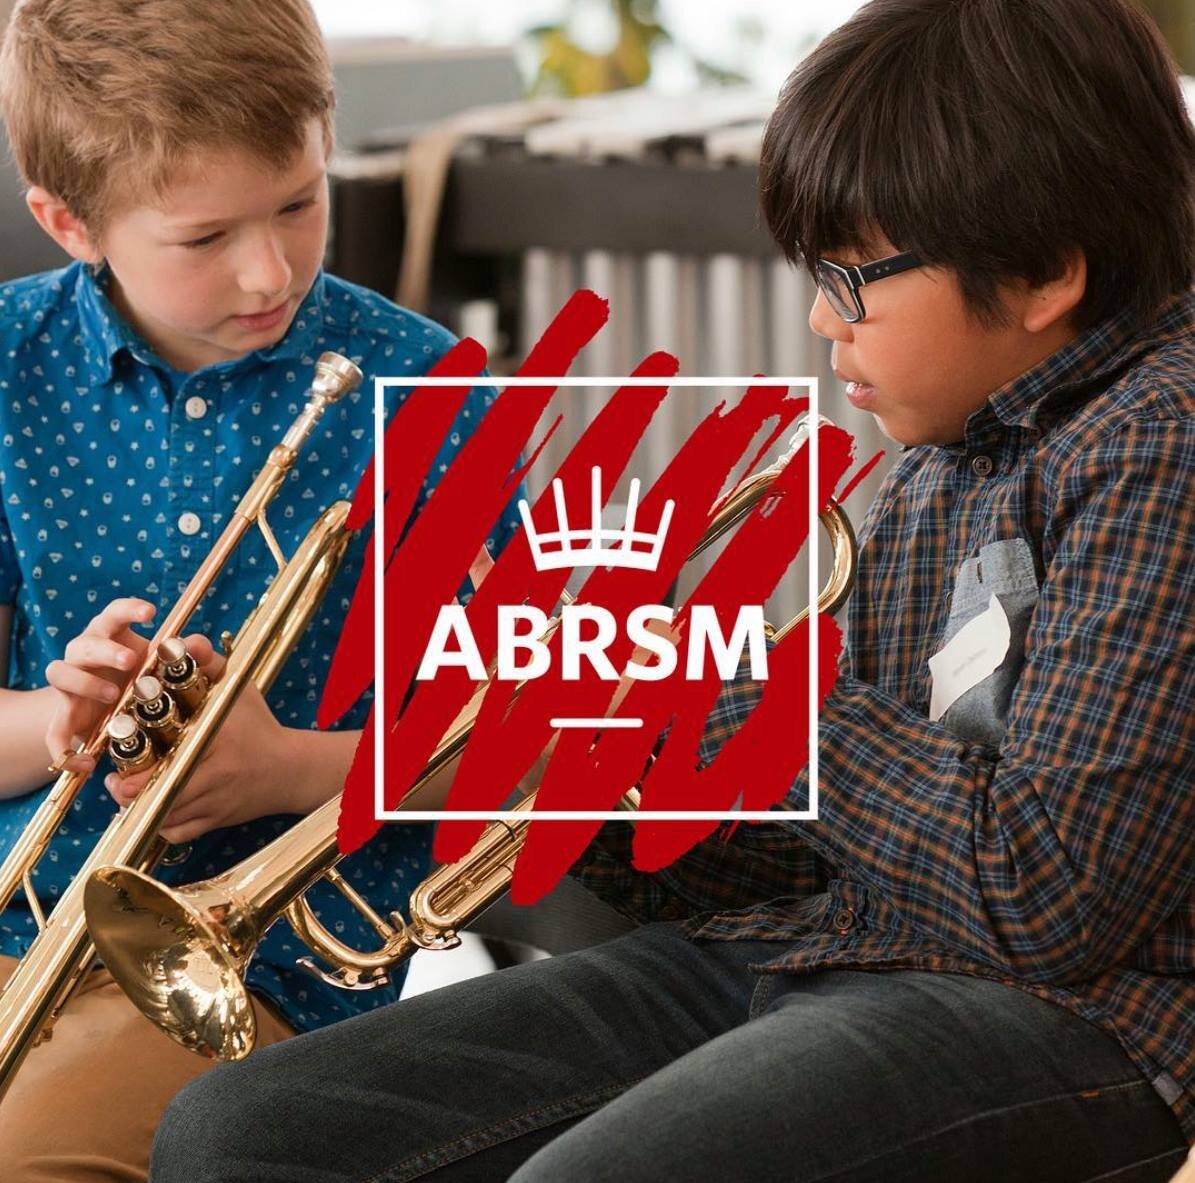 ABRSM Rebrand